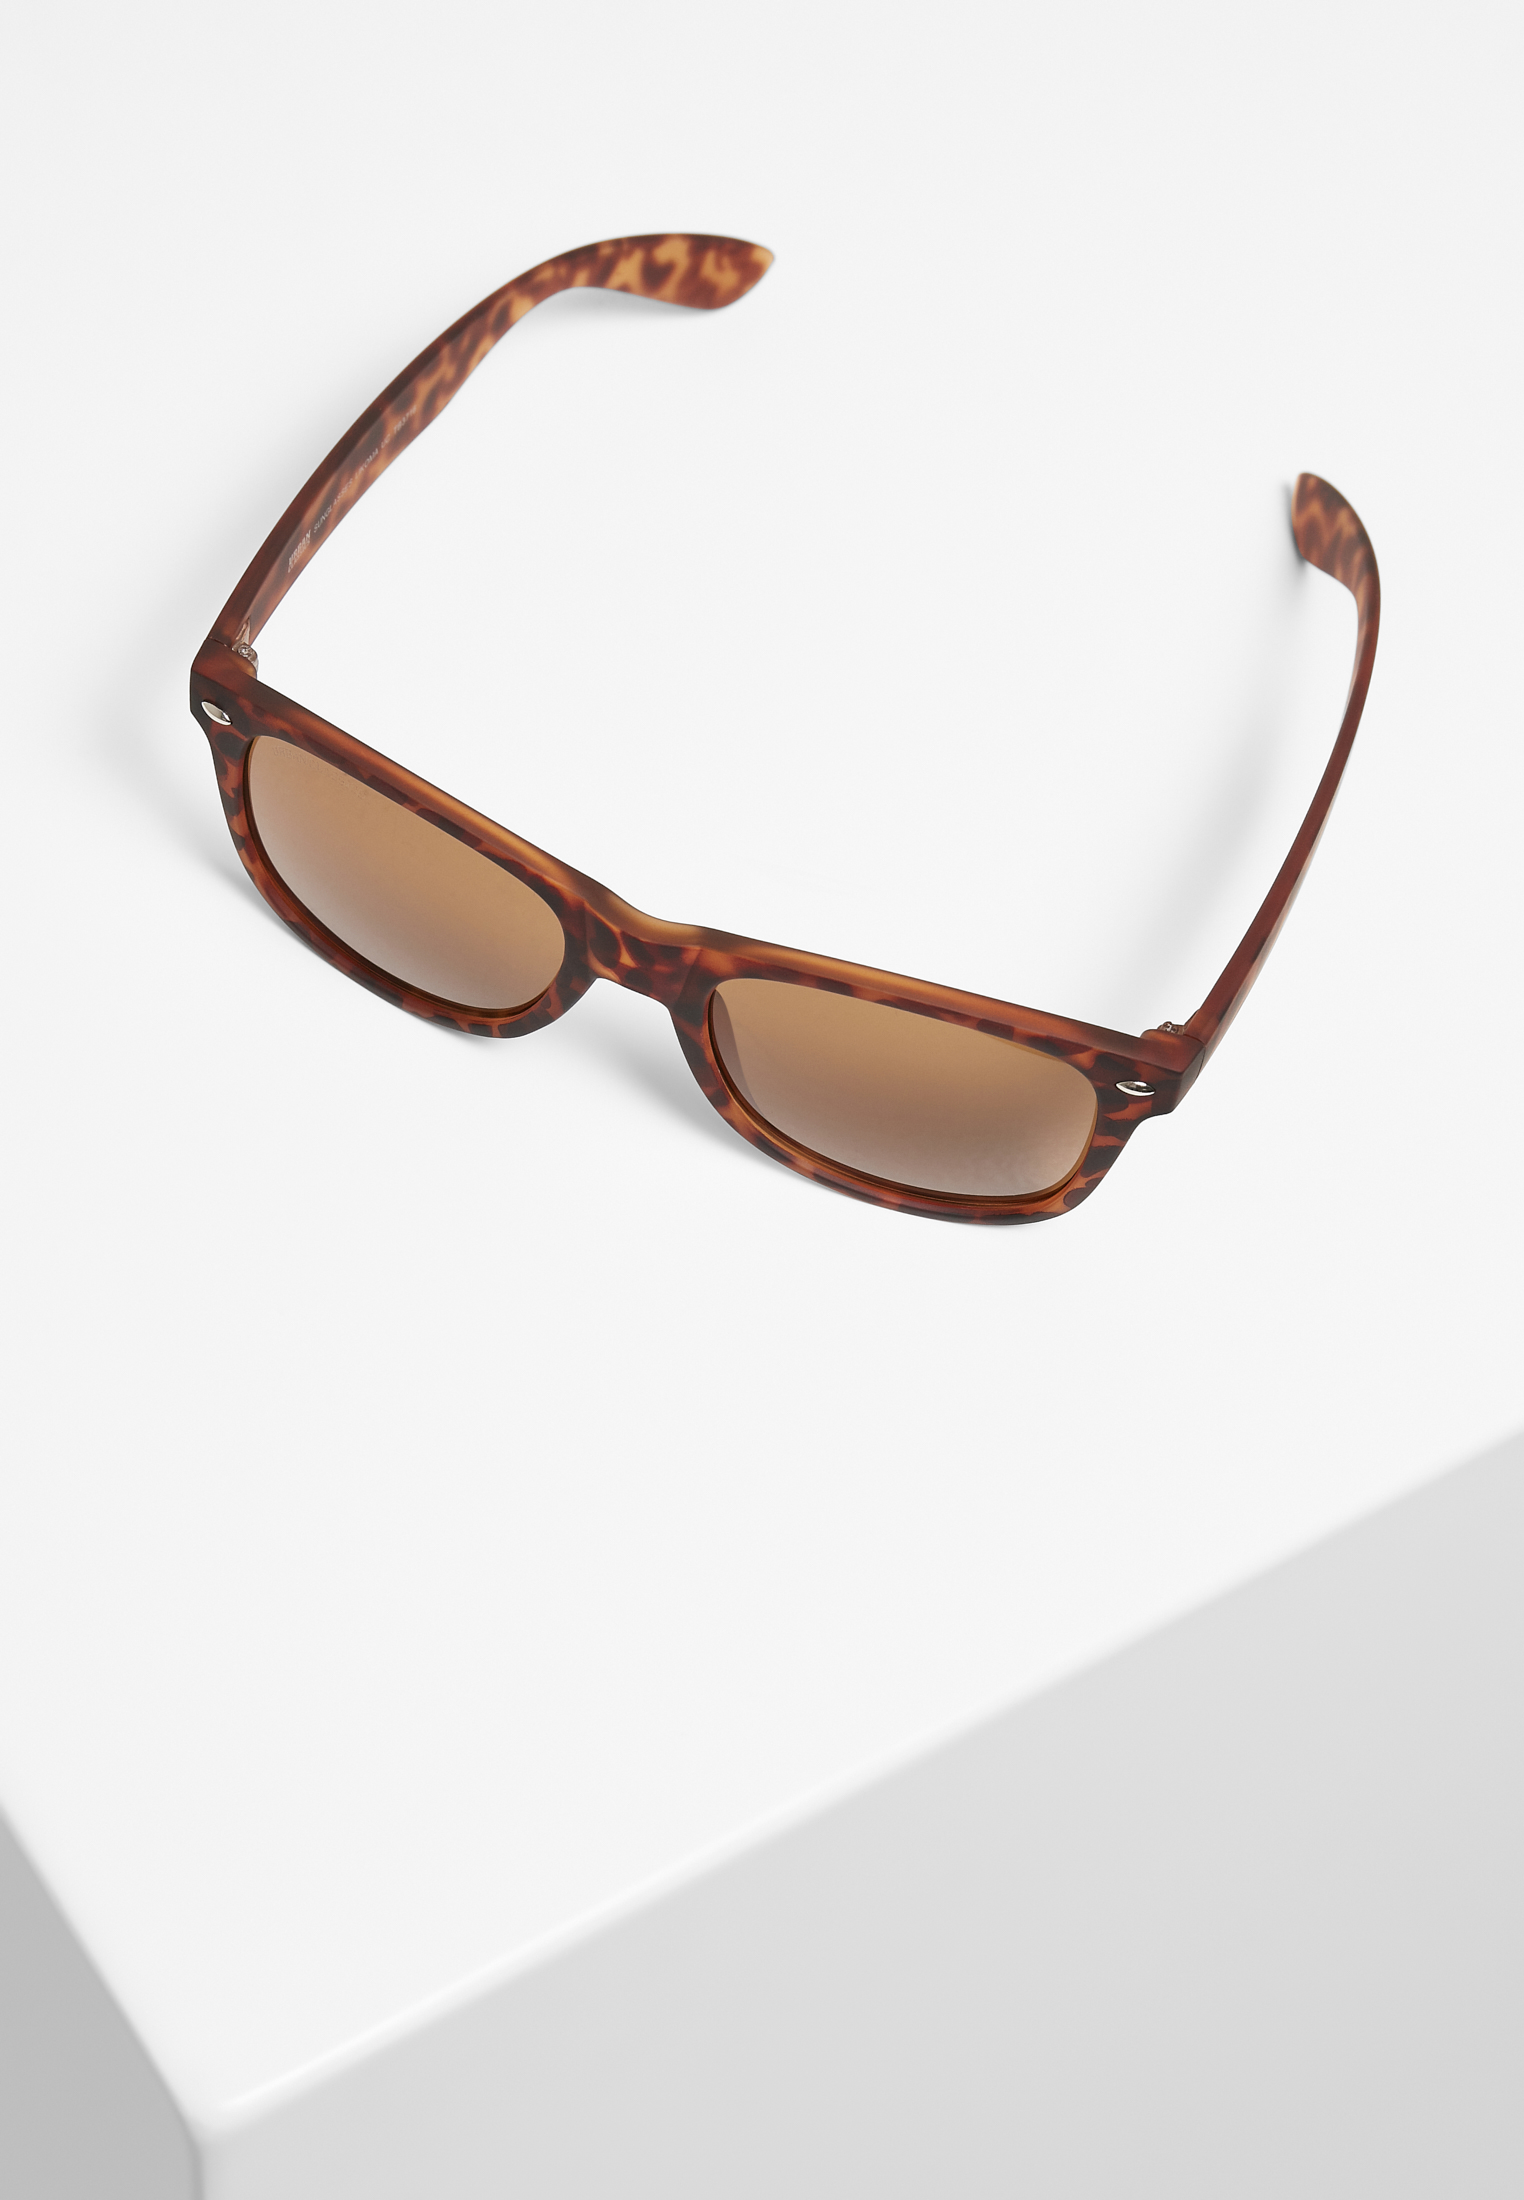 Sonnenbrillen Sunglasses Likoma UC in Farbe brown leo